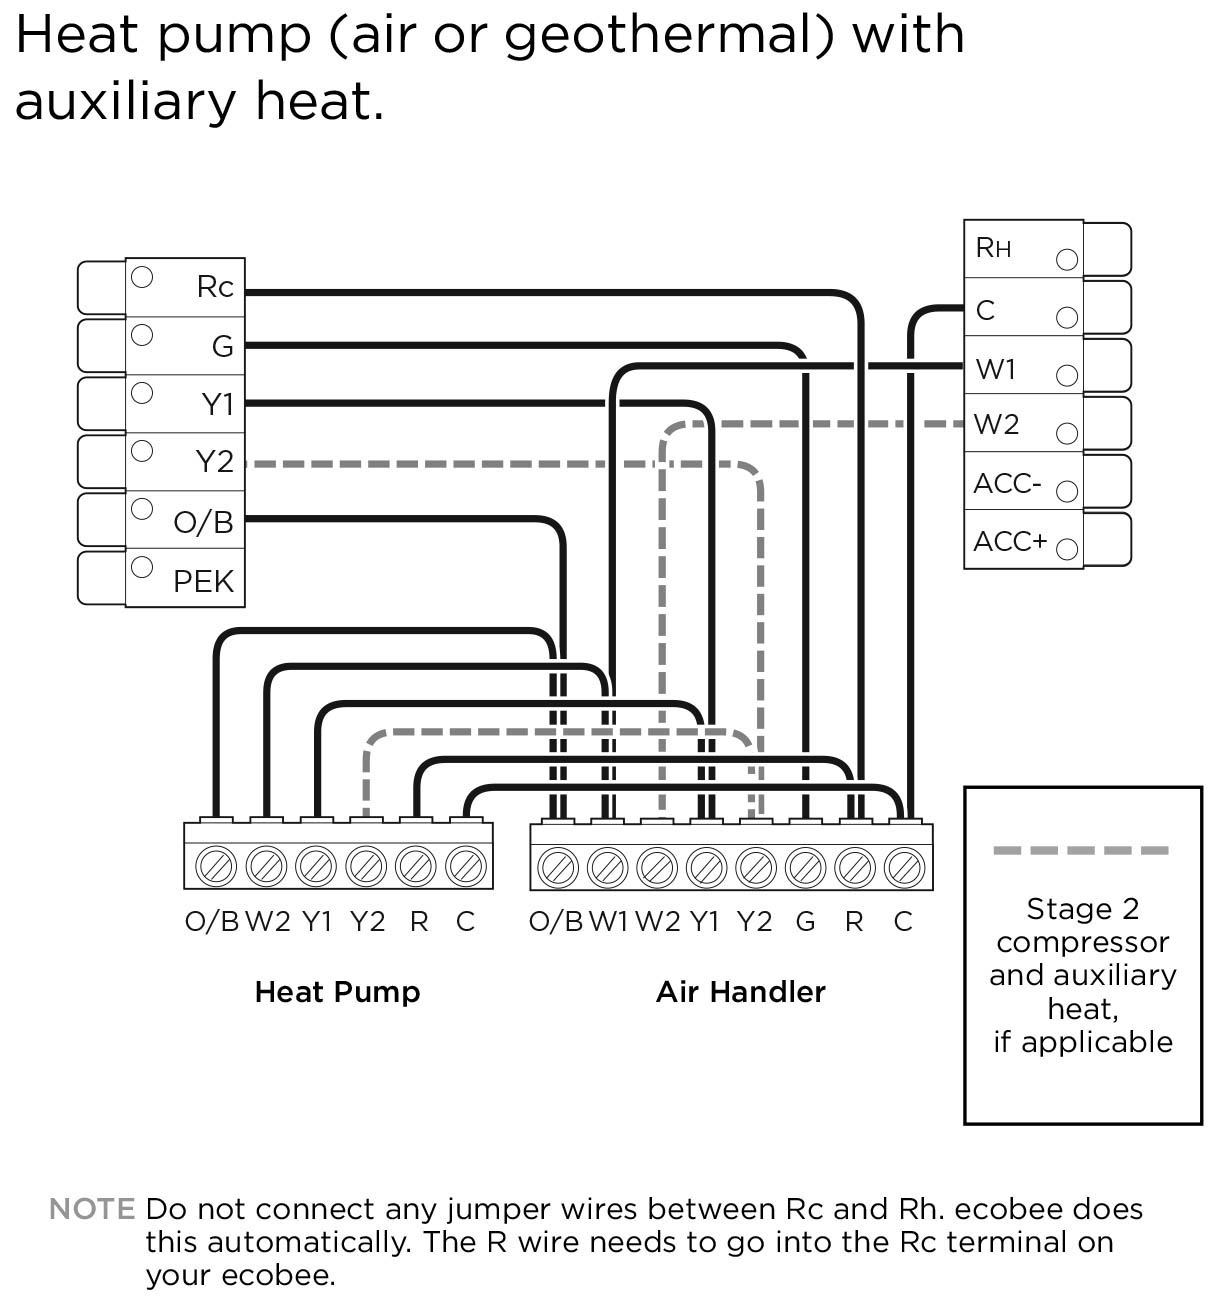 Geothermal Heat Pump Wiring Diagram | Manual E-Books - Heatpump Wiring Diagram